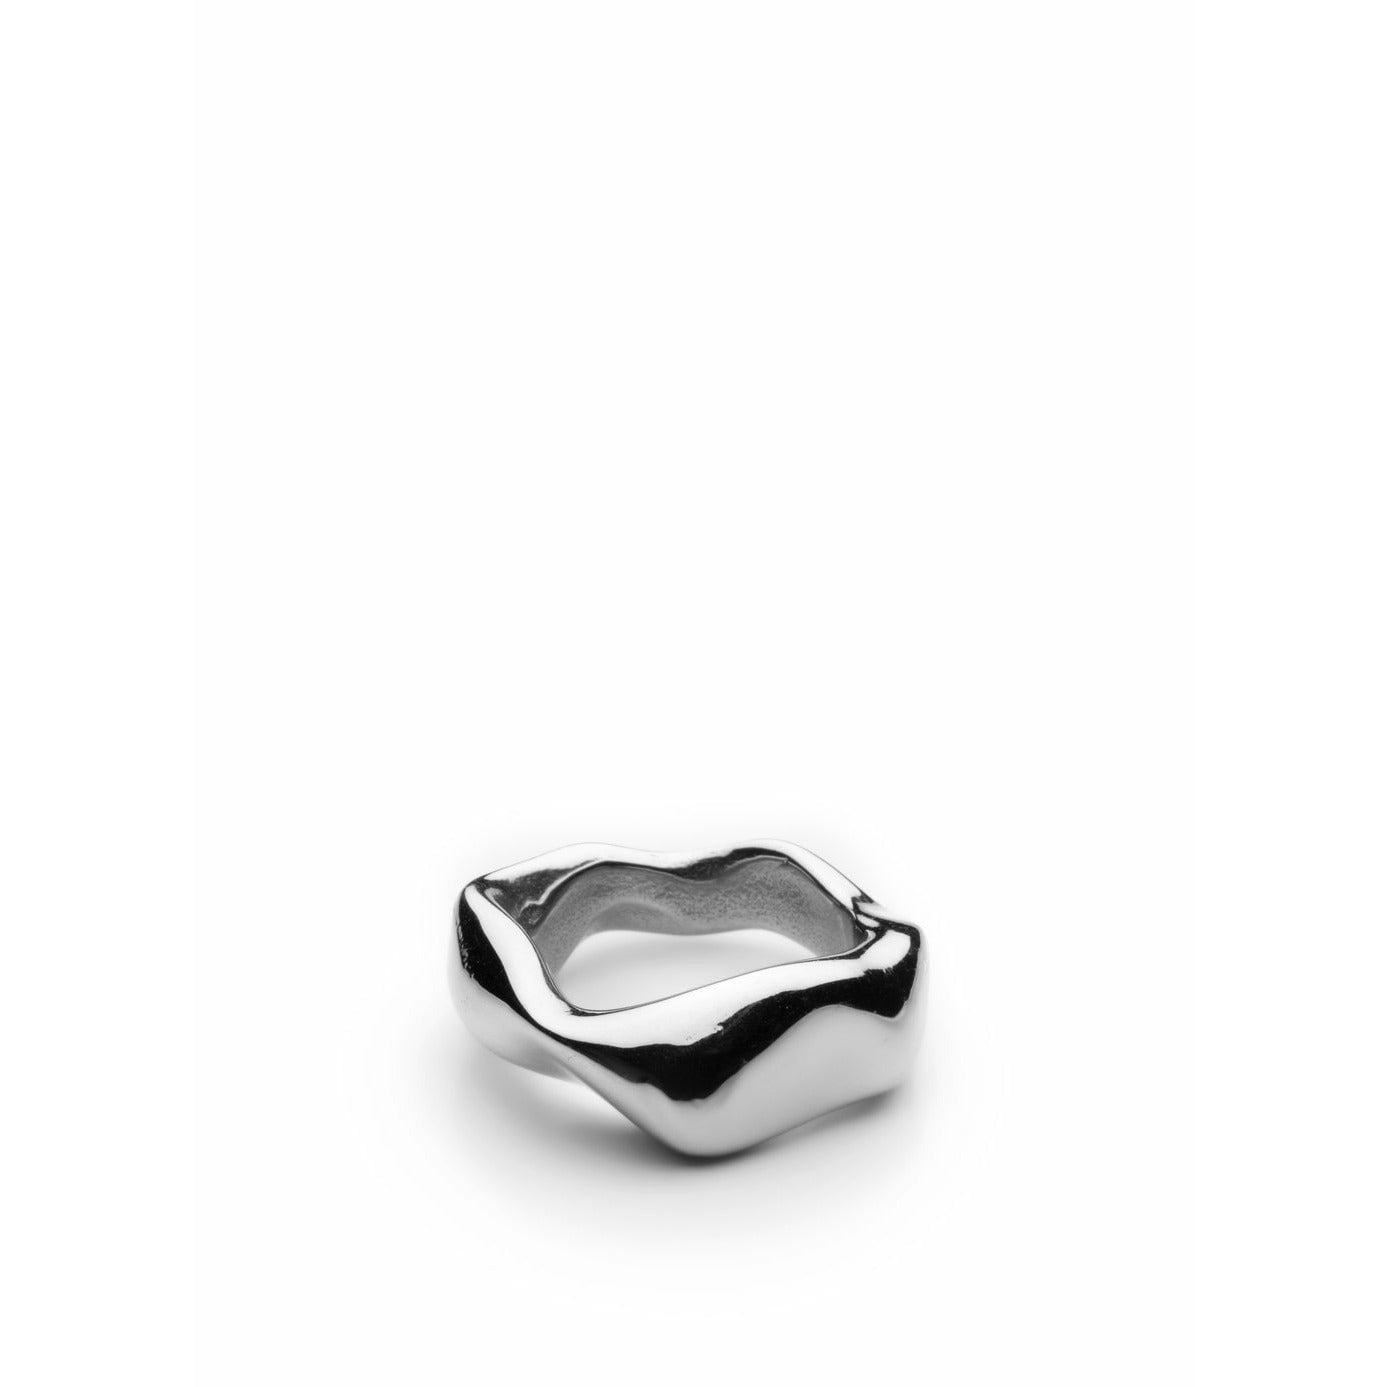 Anello grosso skultuna acciaio lucido, Ø1,97 cm